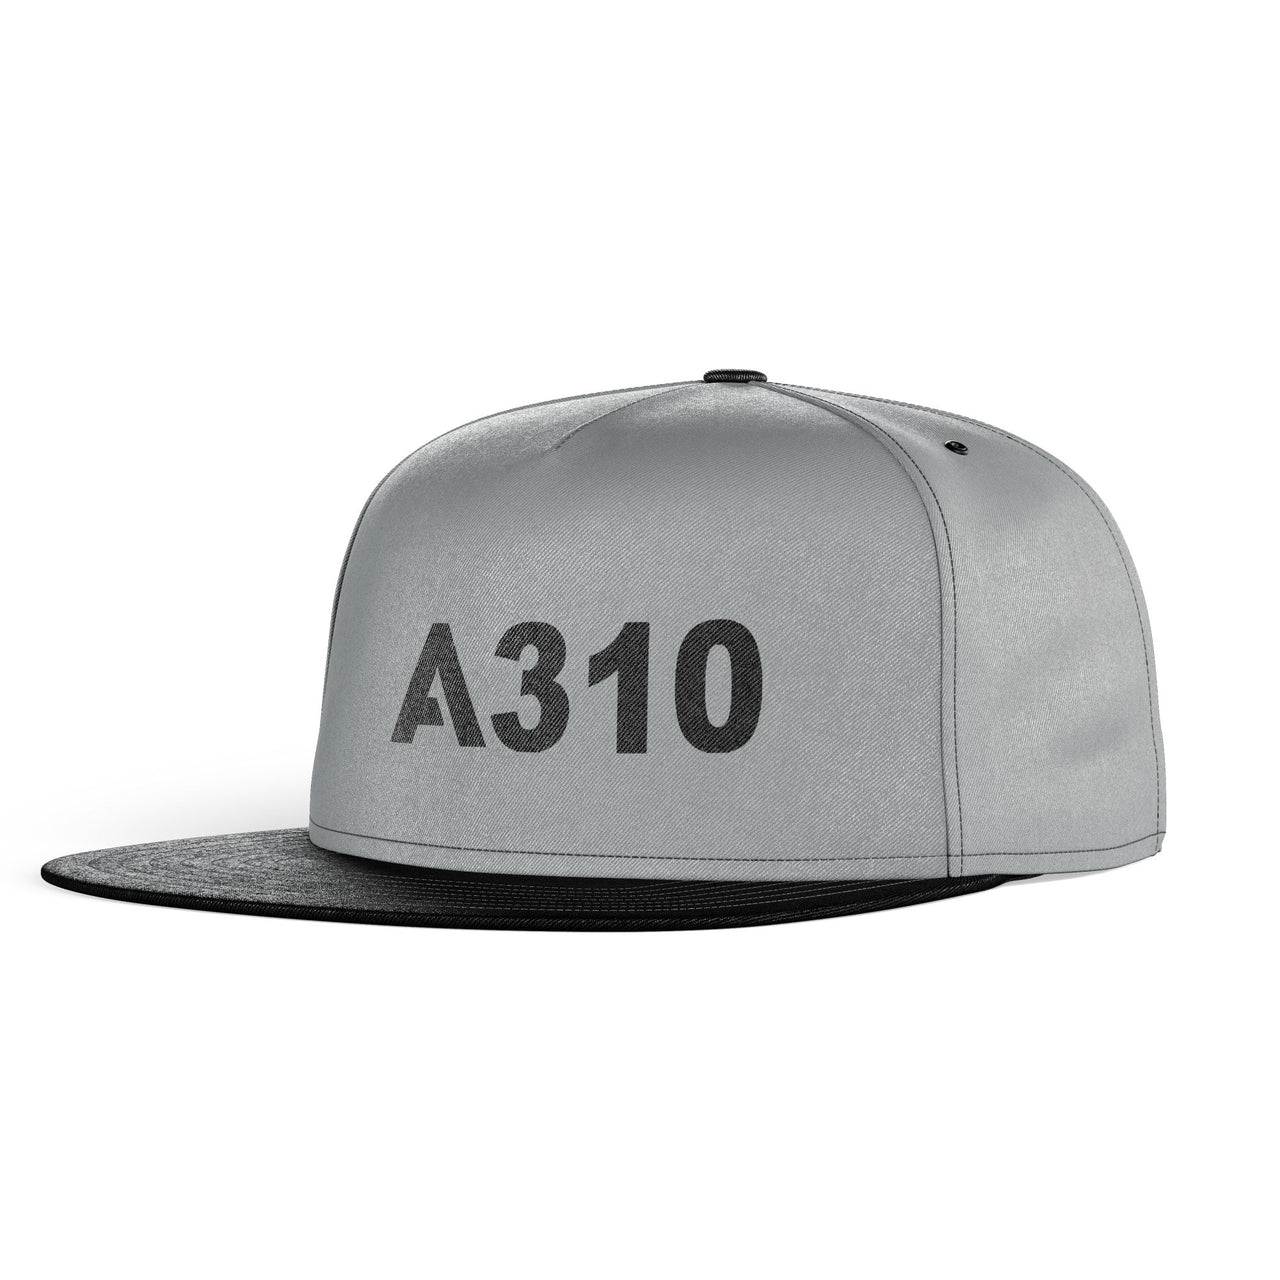 A310 Flat Text Designed Snapback Caps & Hats